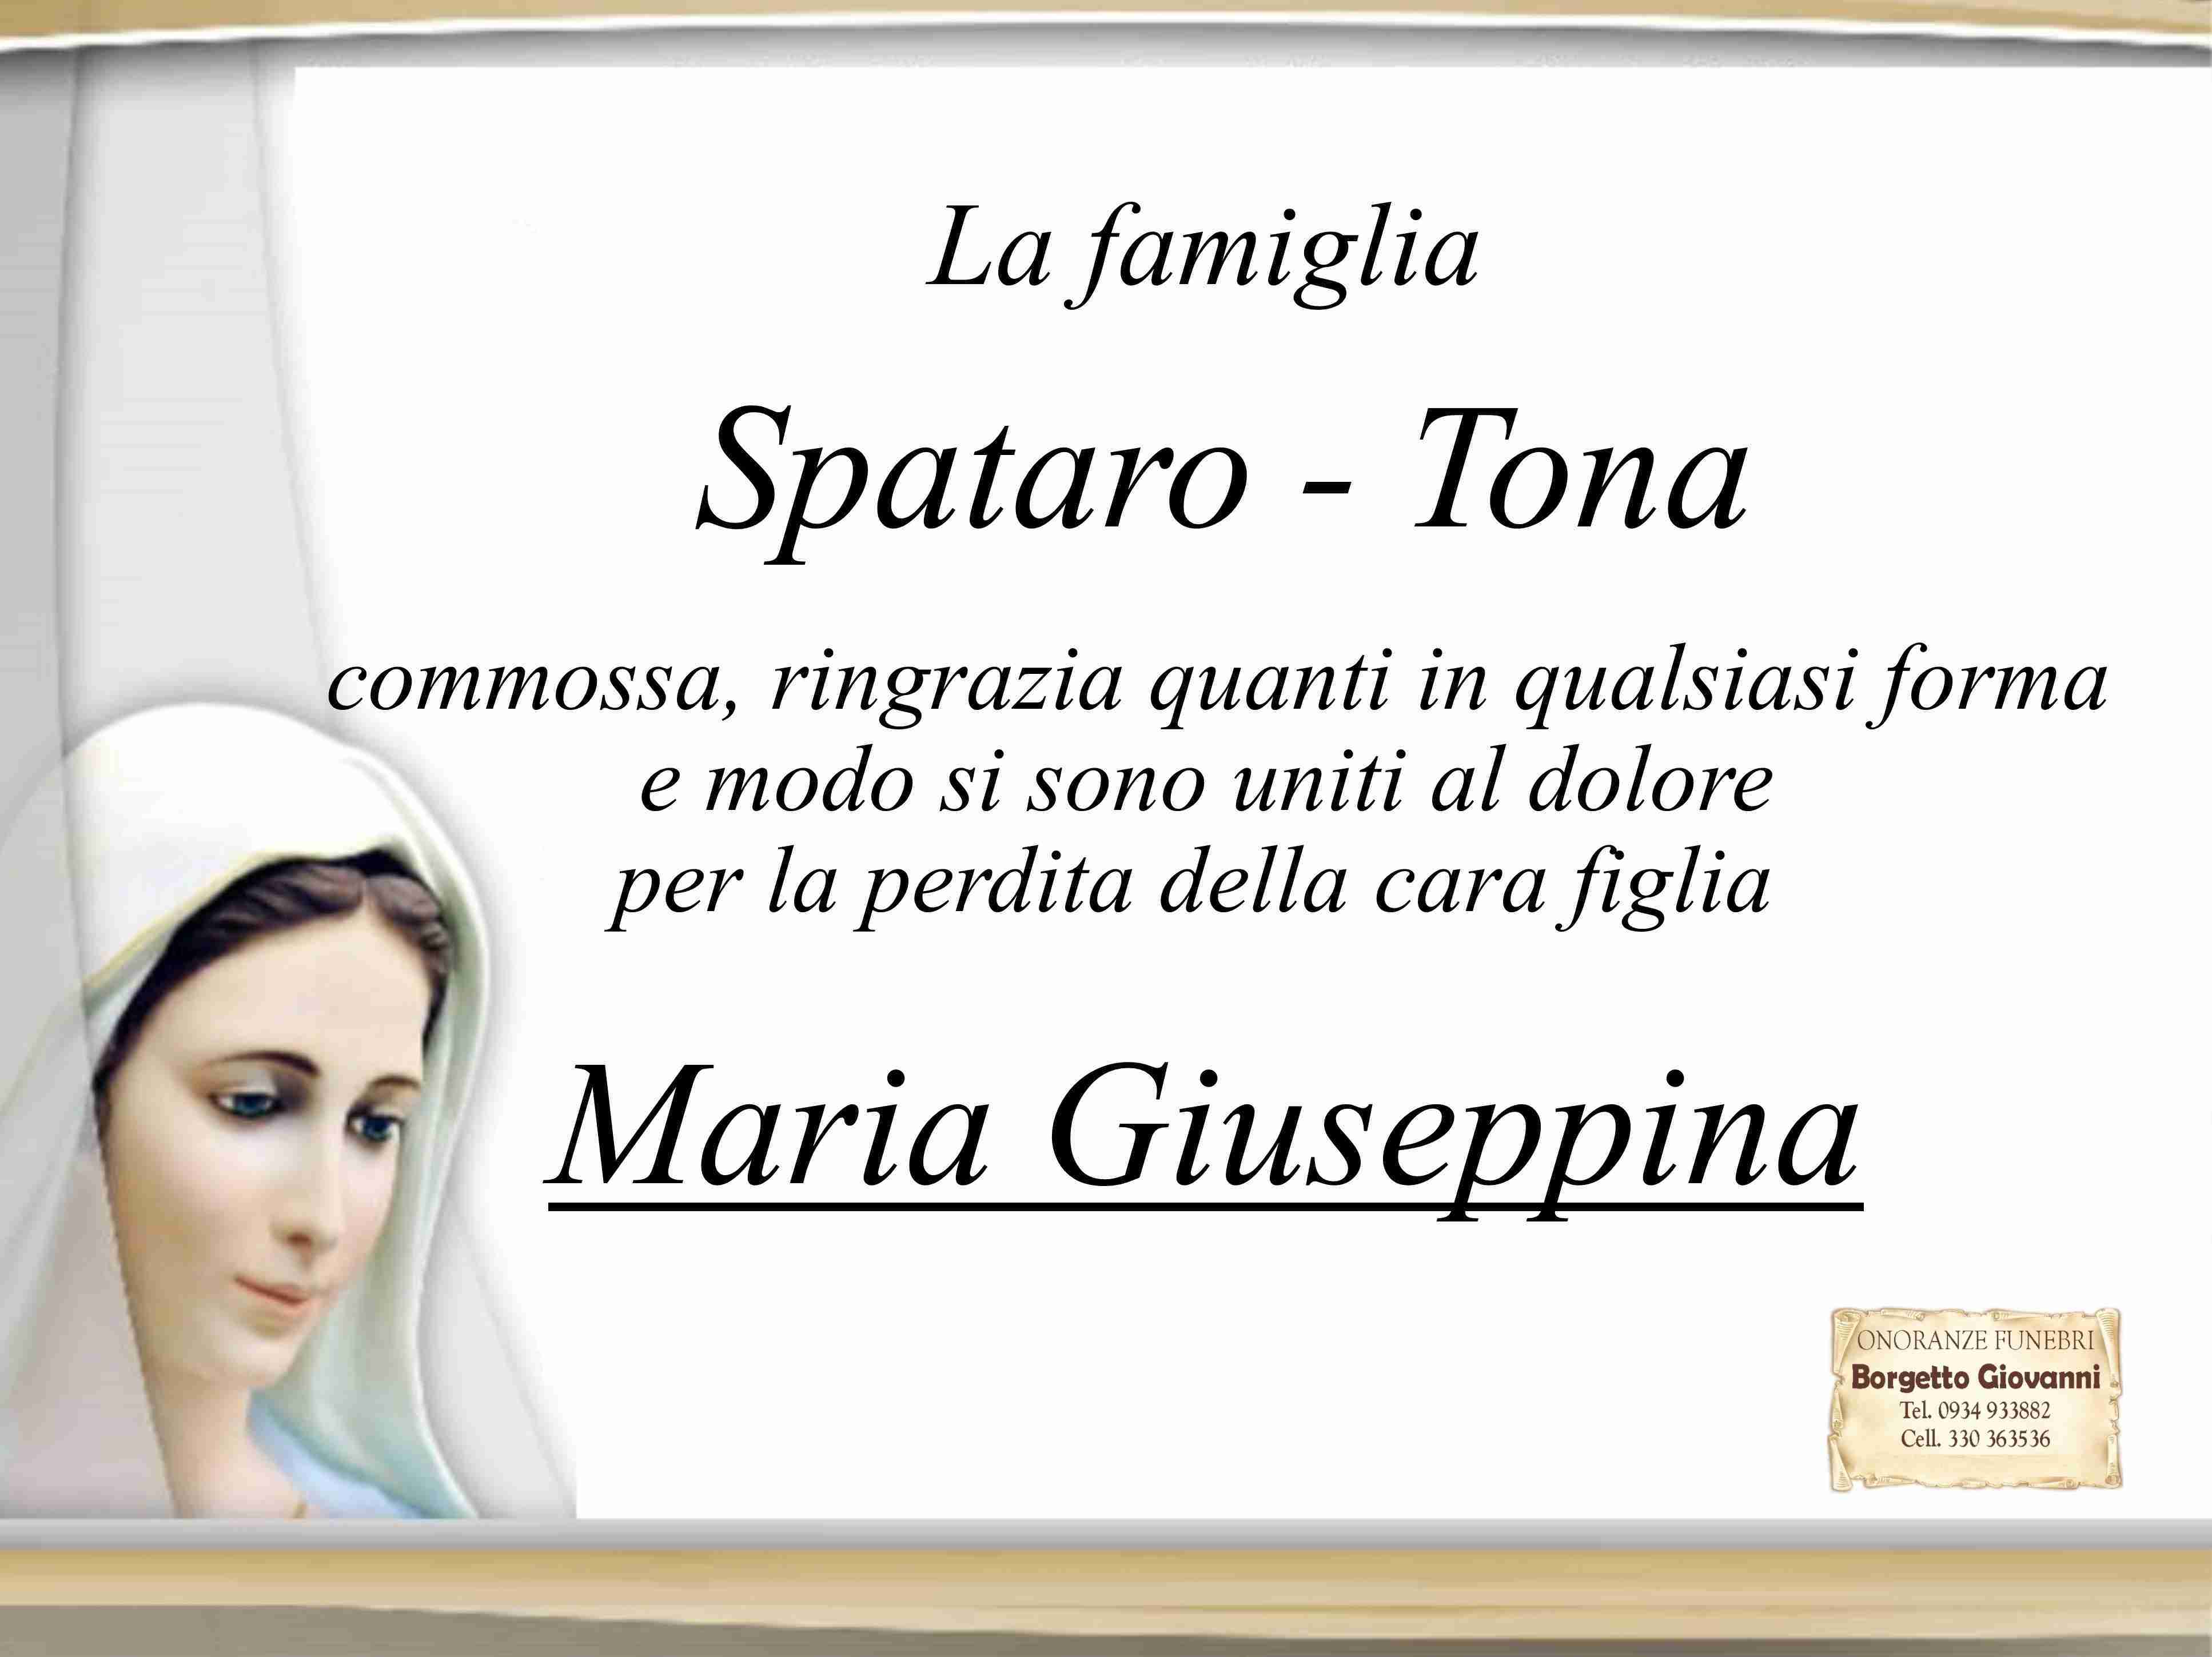 Maria Giuseppina Spataro